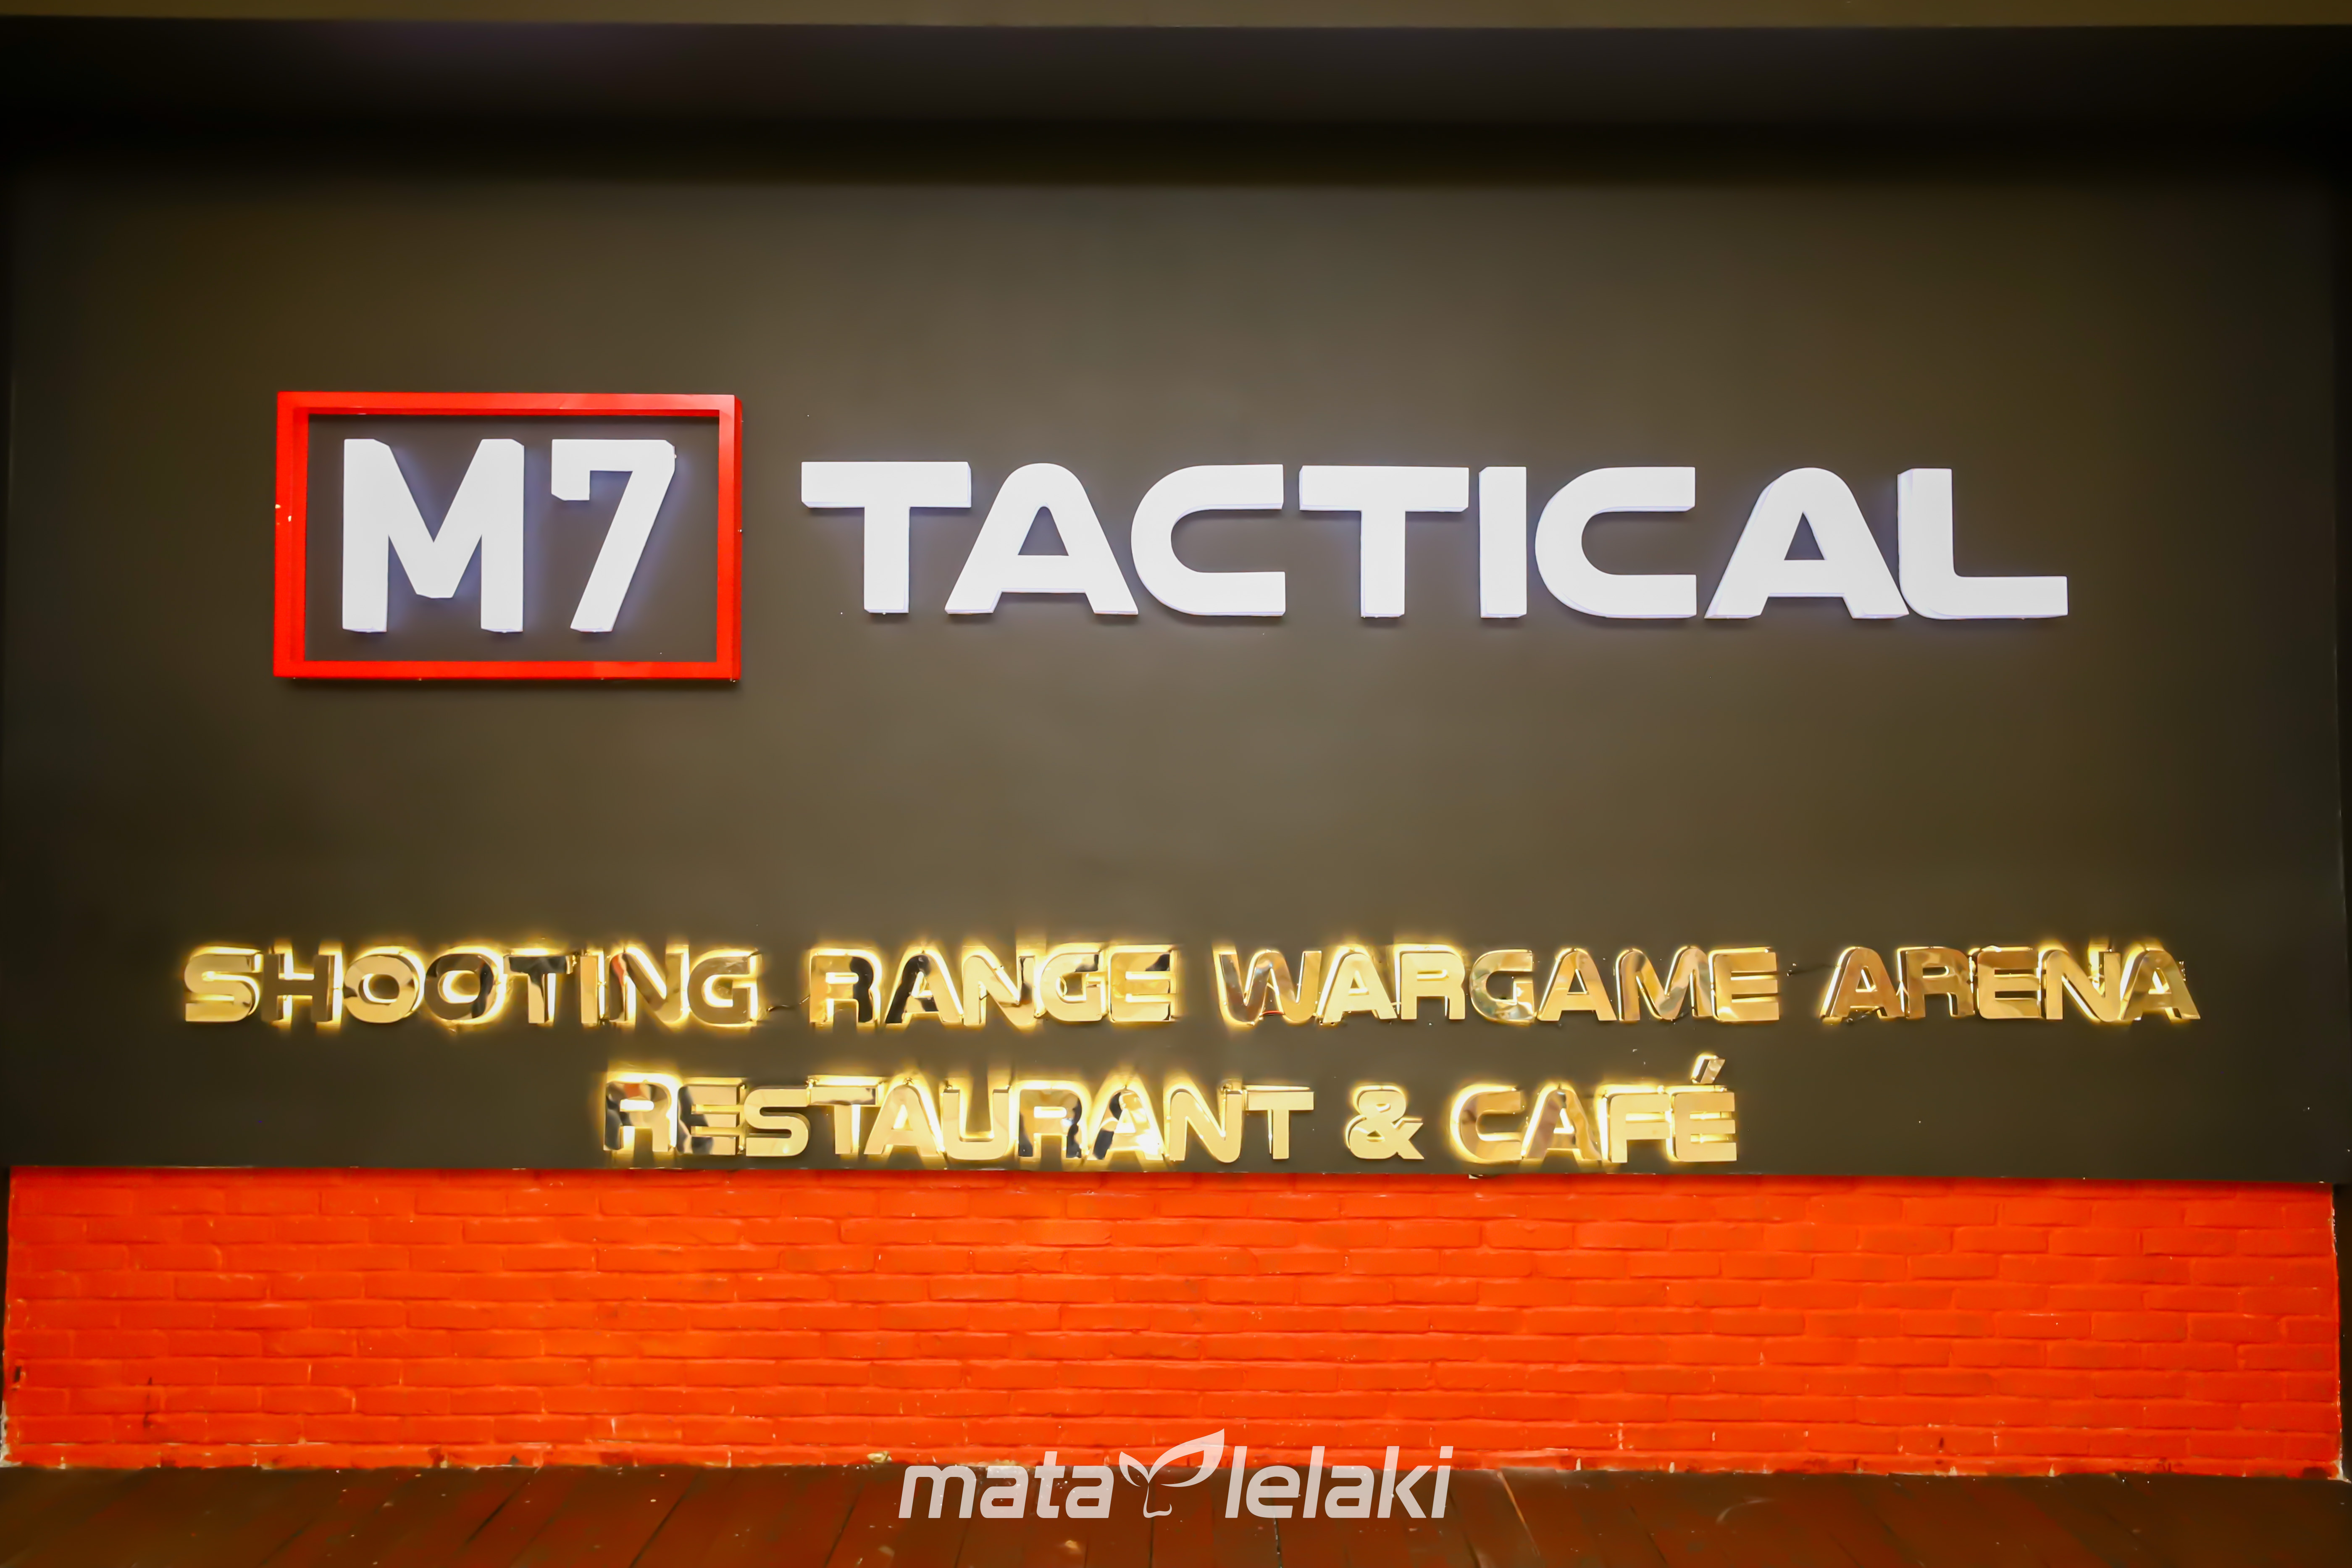 M7 TACTICAL